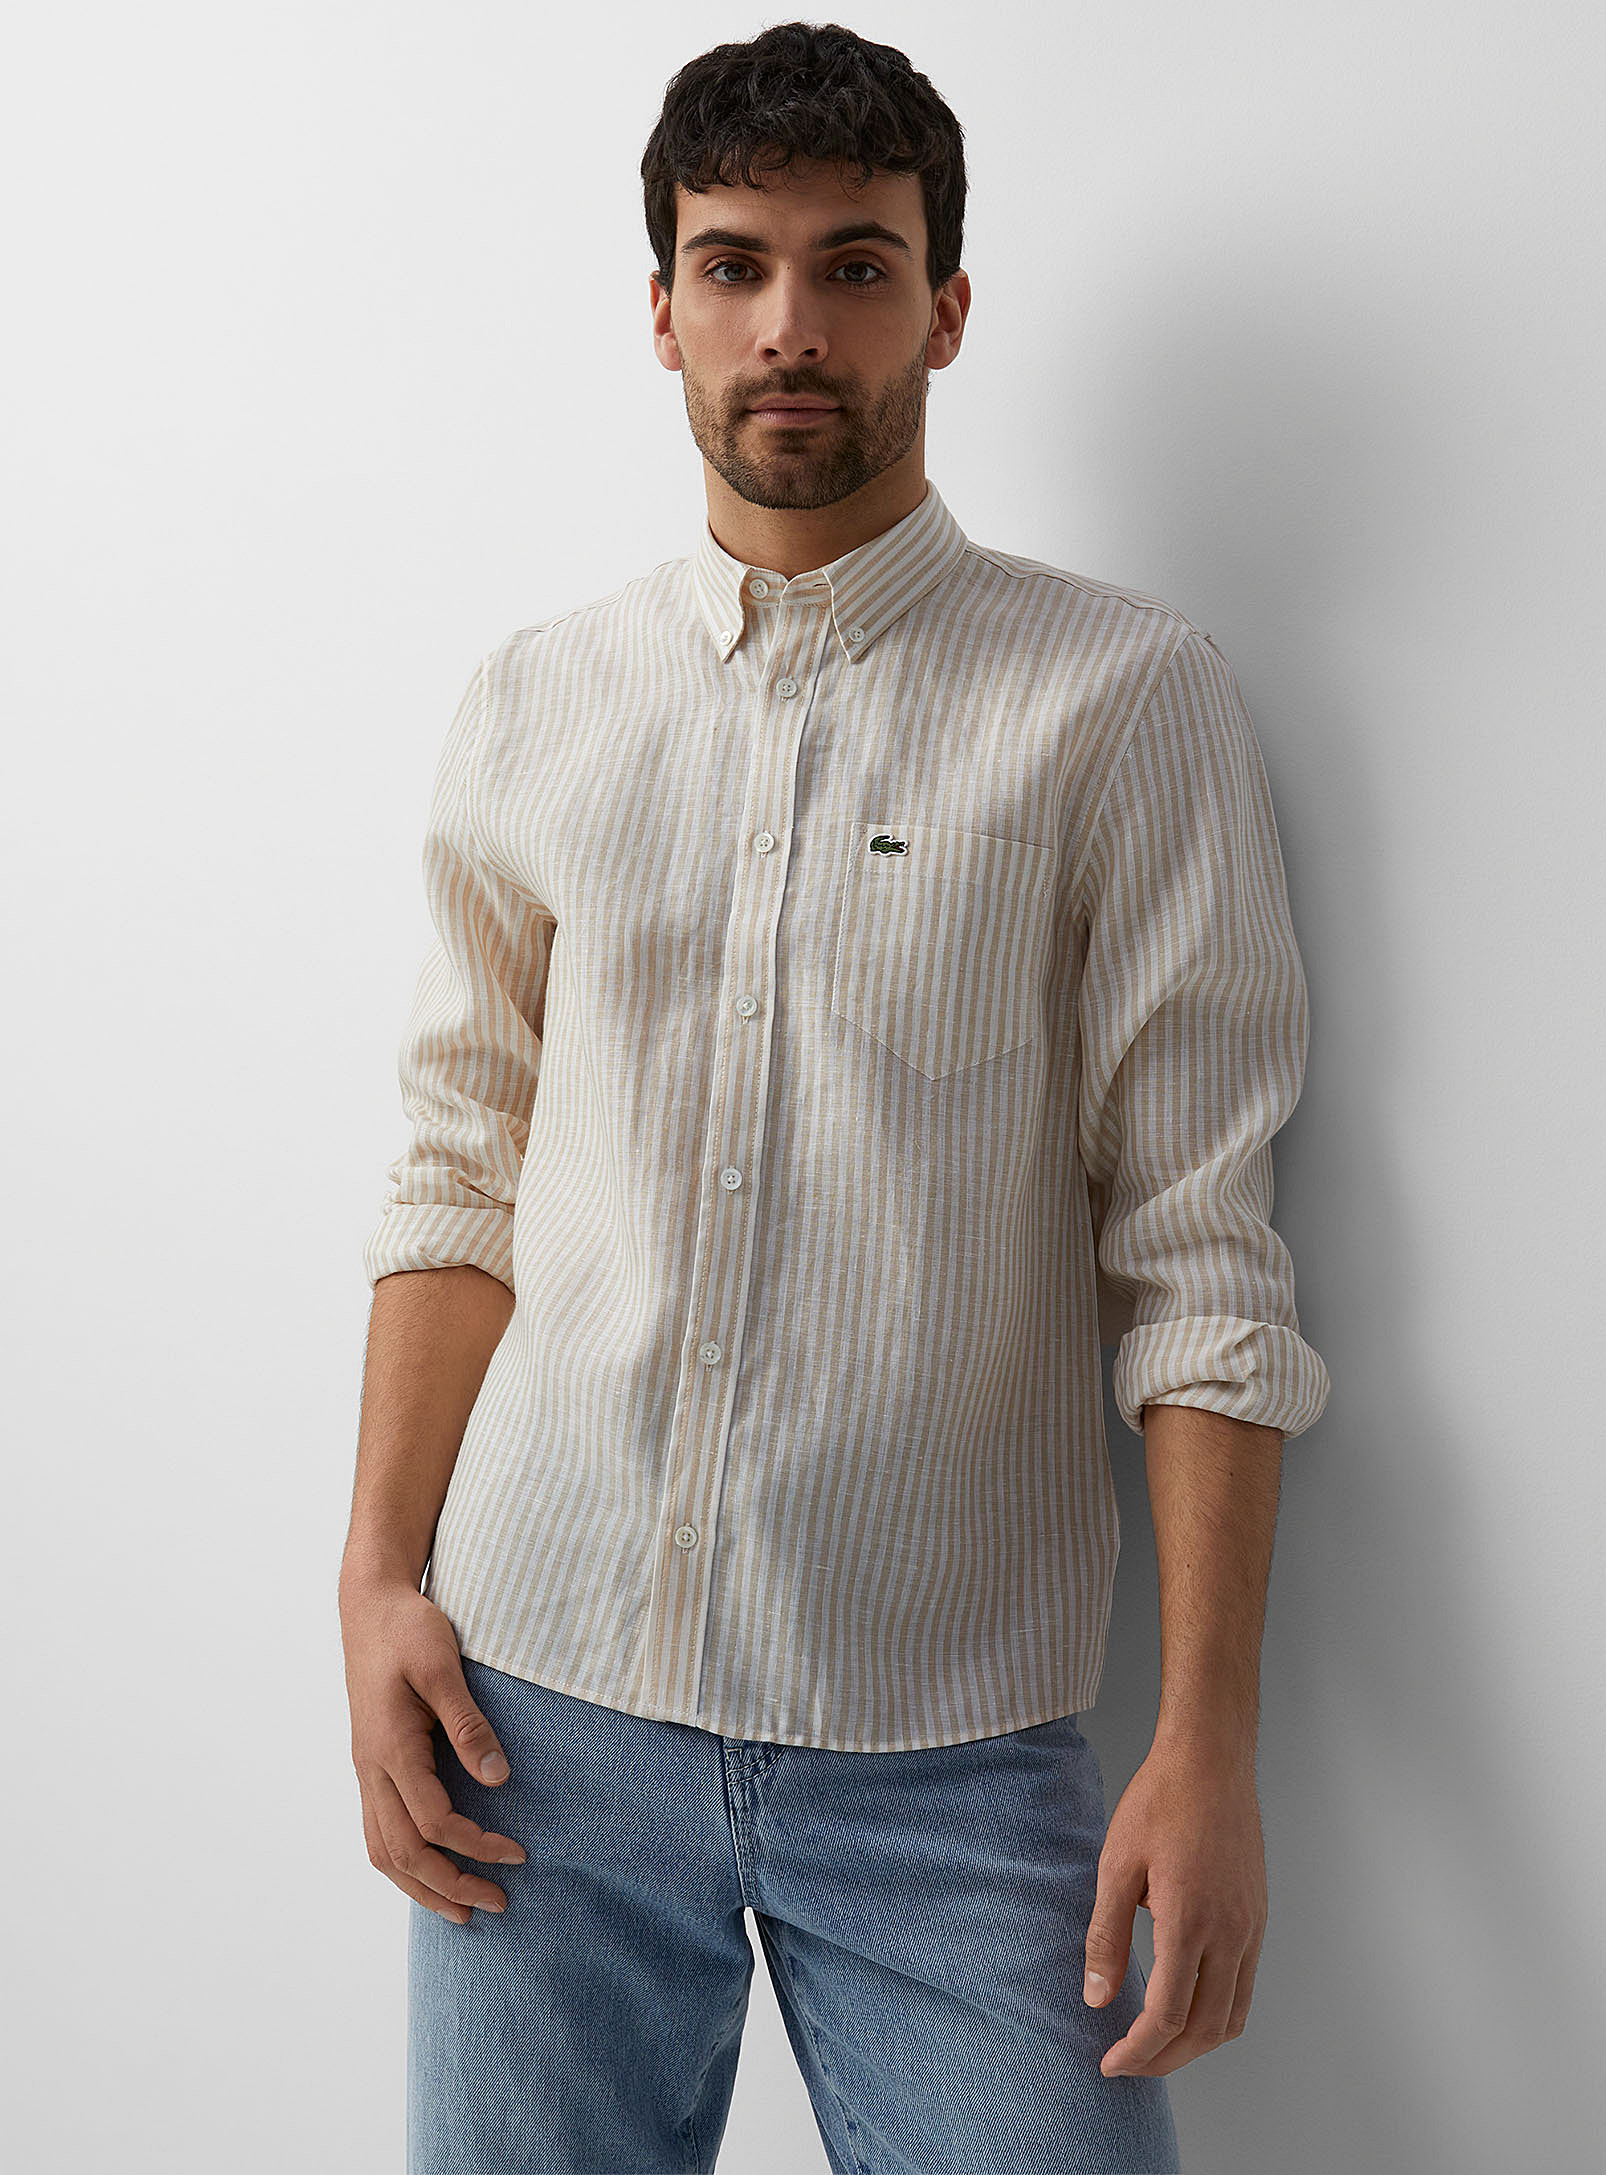 Lacoste - Men's Pure linen vertical stripe shirt